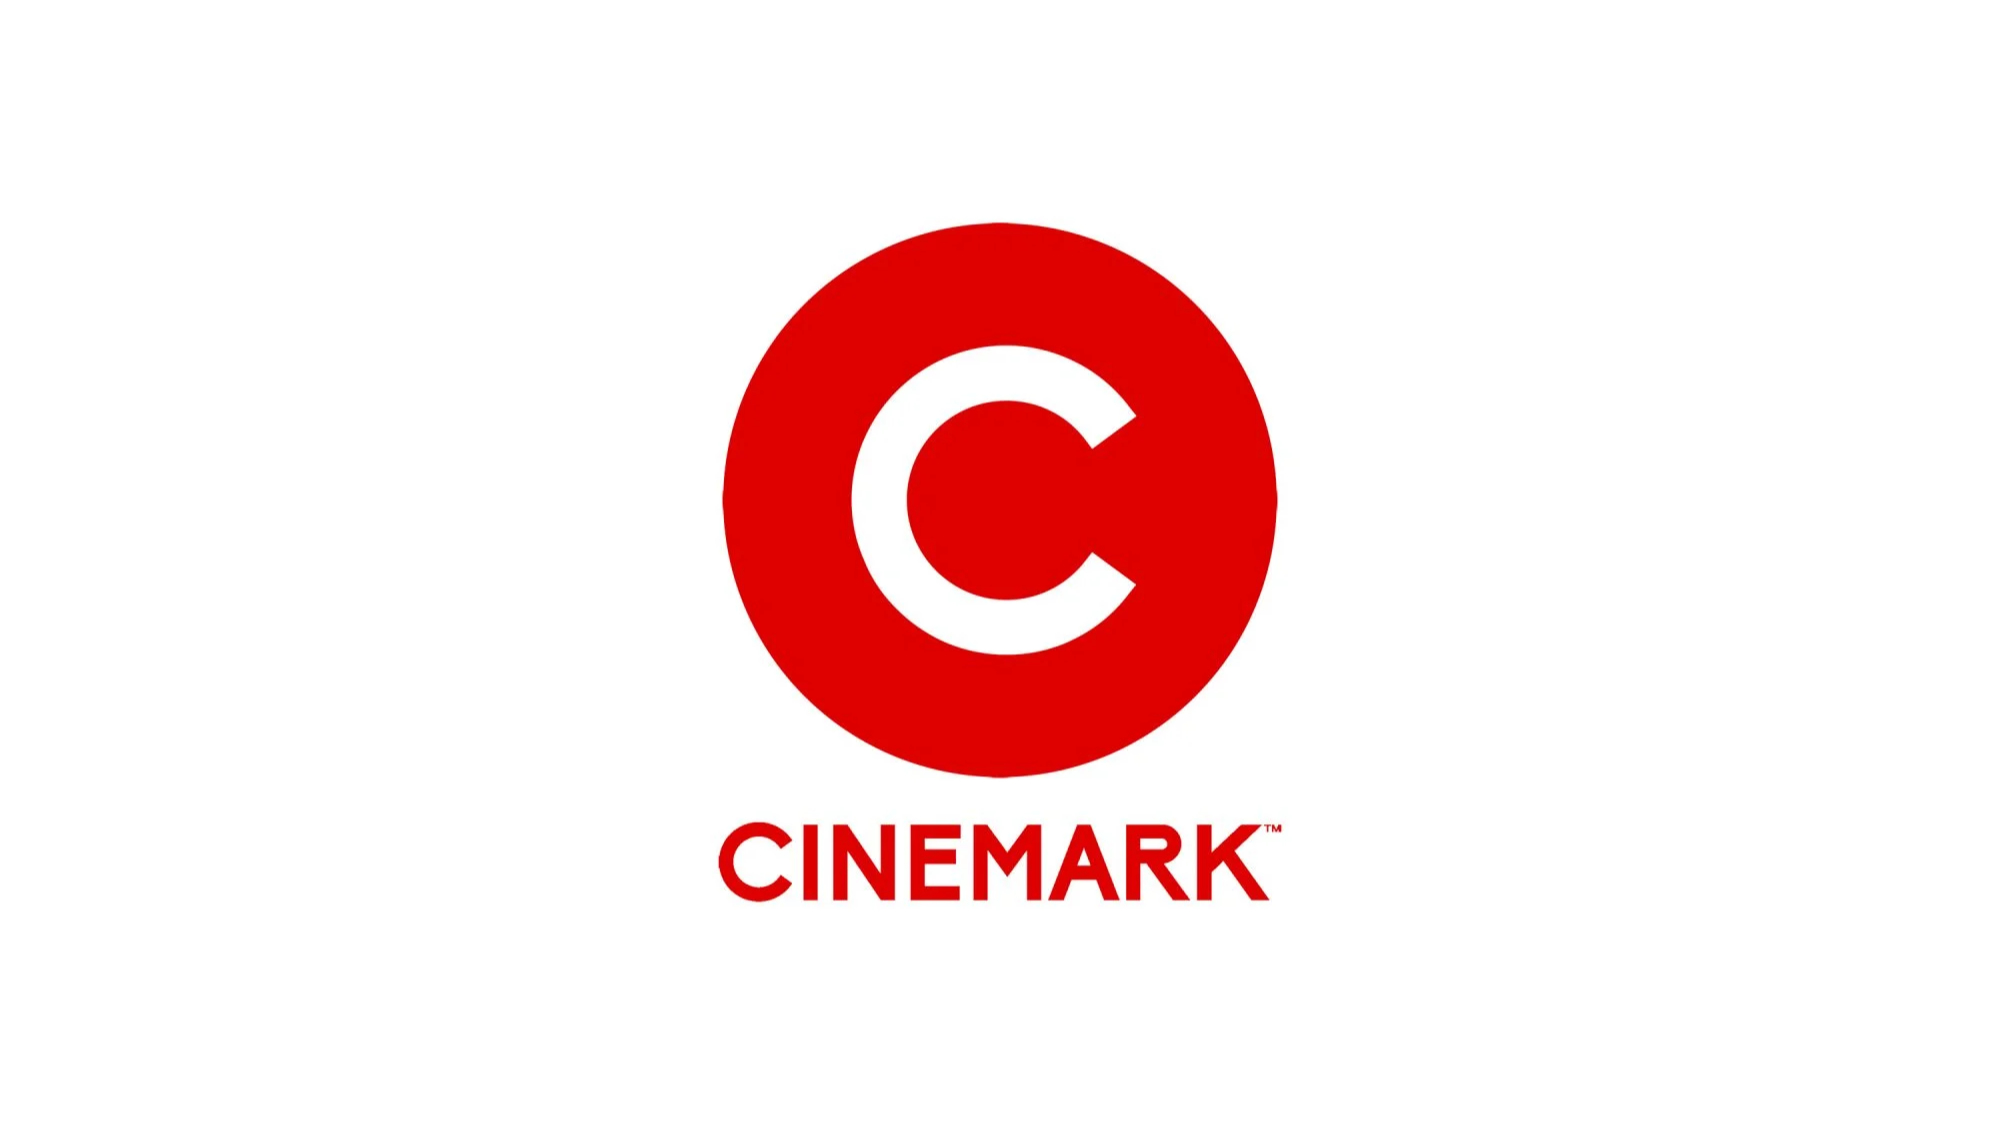 Cinemark apresenta novo logotipo e identidade visual focados em